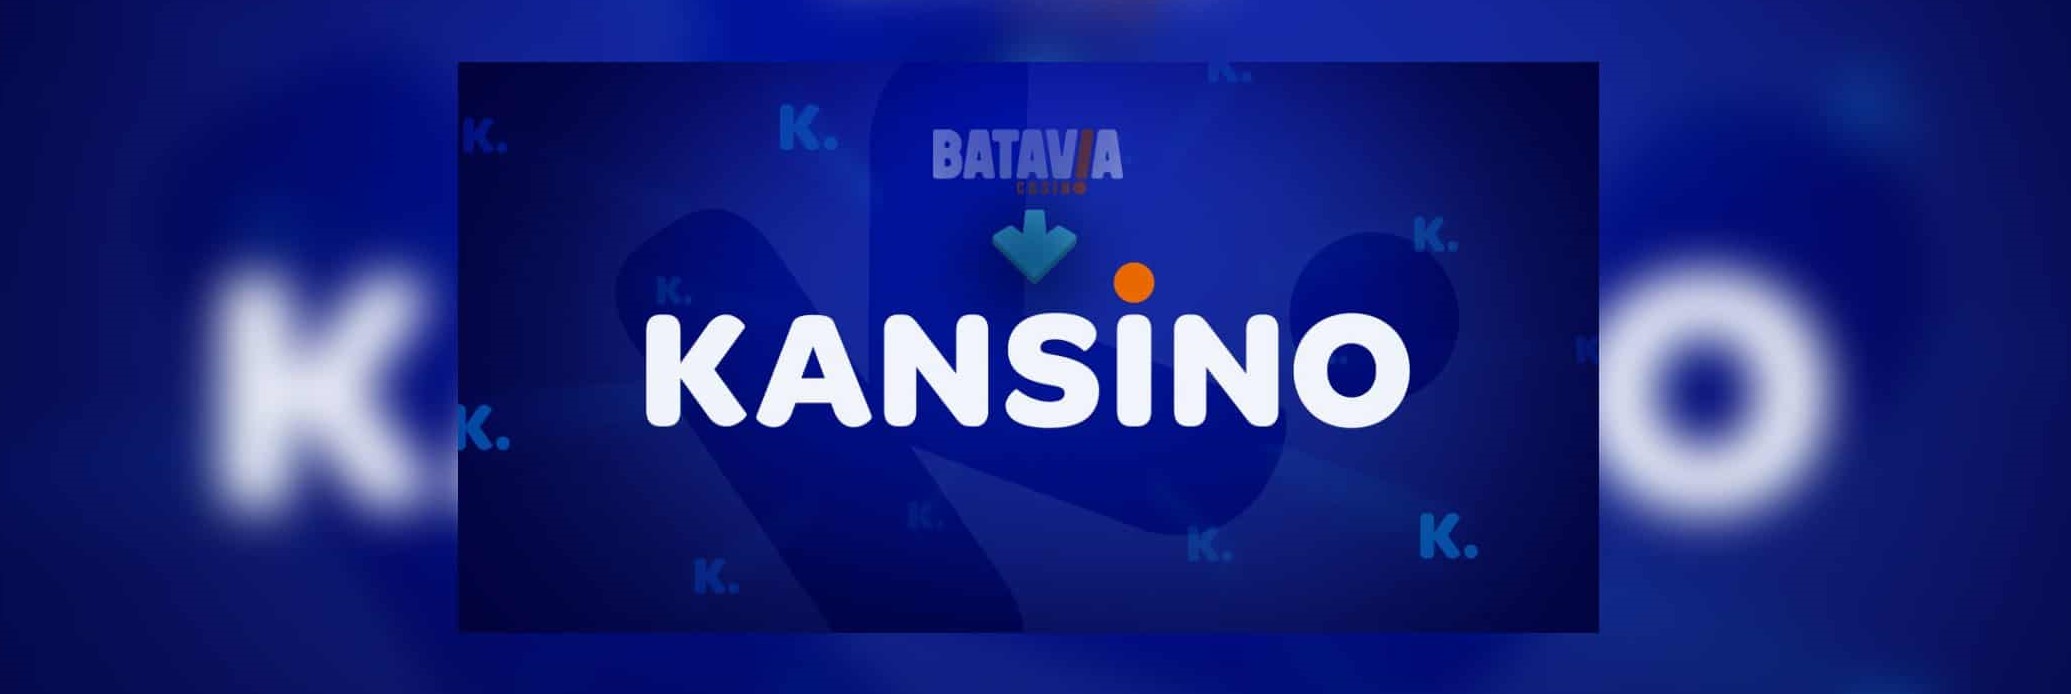 Naam online casino Batavia Kansino